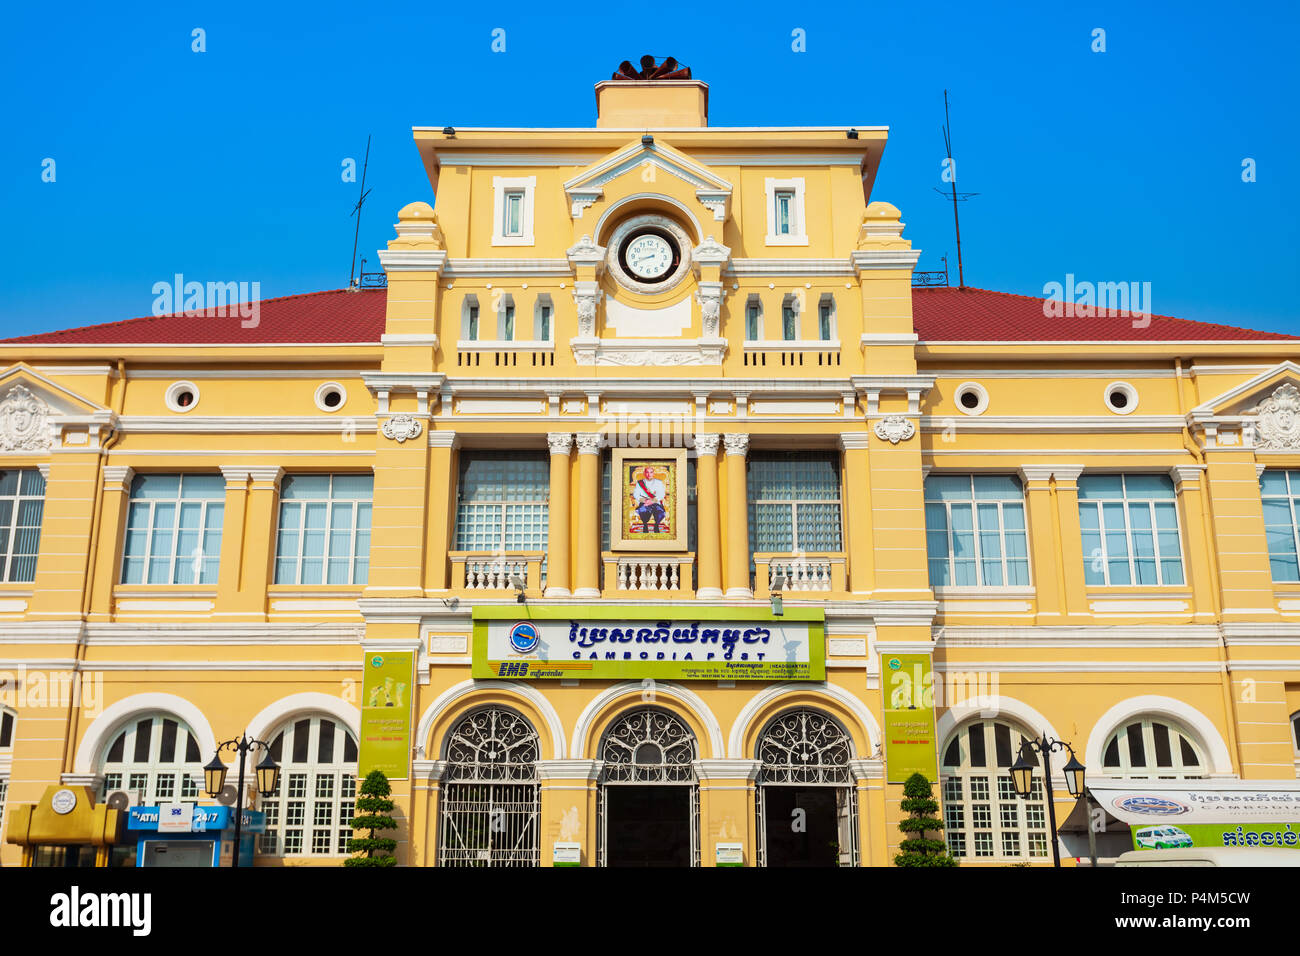 PHNOM PENH, CAMBODIA - MARCH 24, 2018: Cambodia Post Office main building in Phnom Penh city in Cambodia Stock Photo